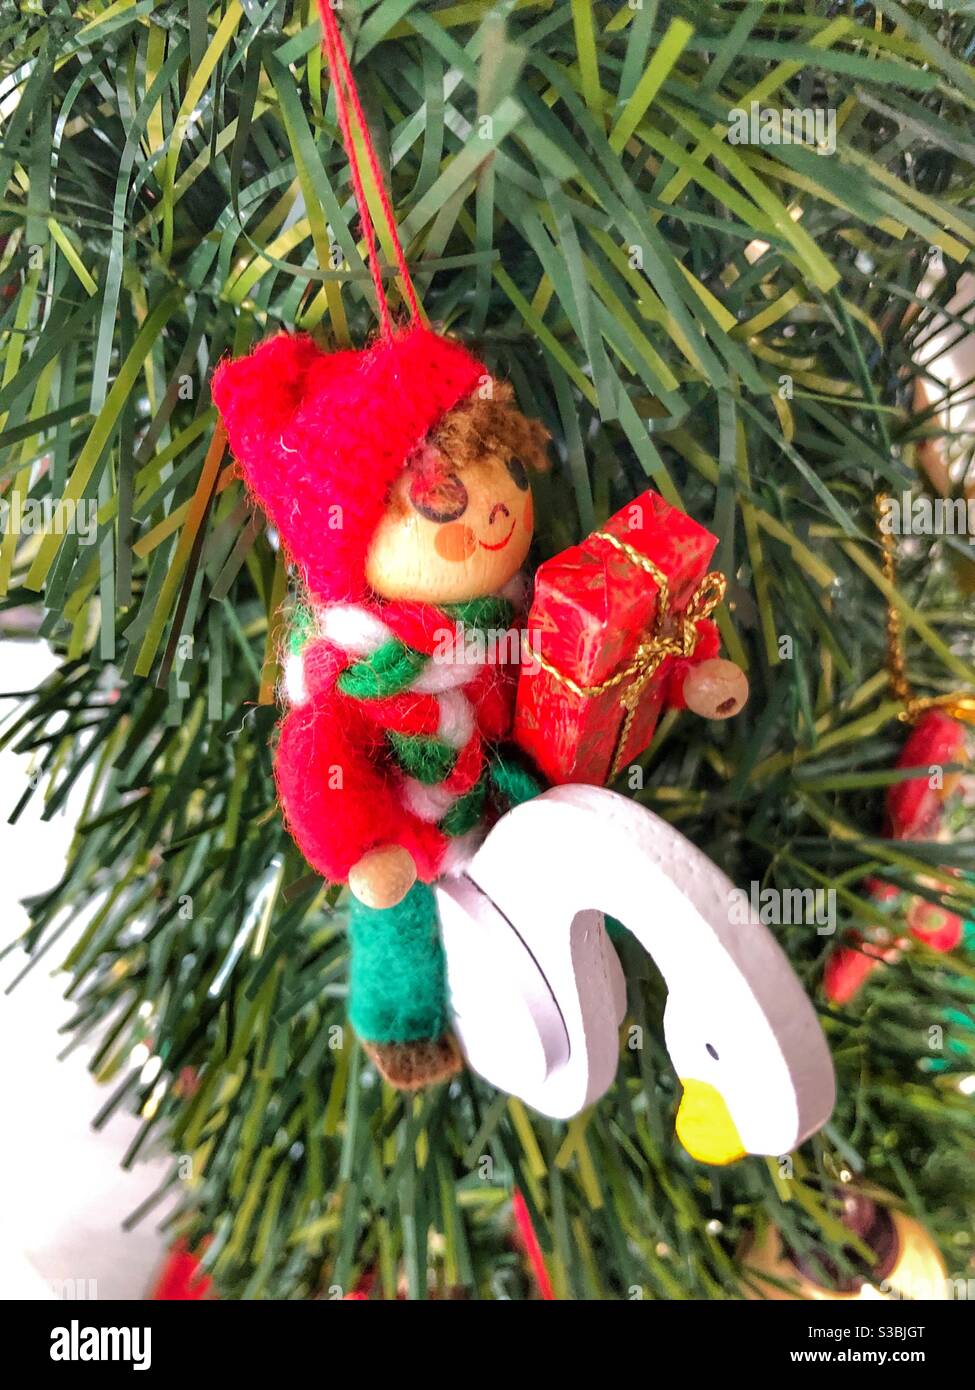 Un adorable ornement de Noël fantaisie accroché dans un arbre. Banque D'Images